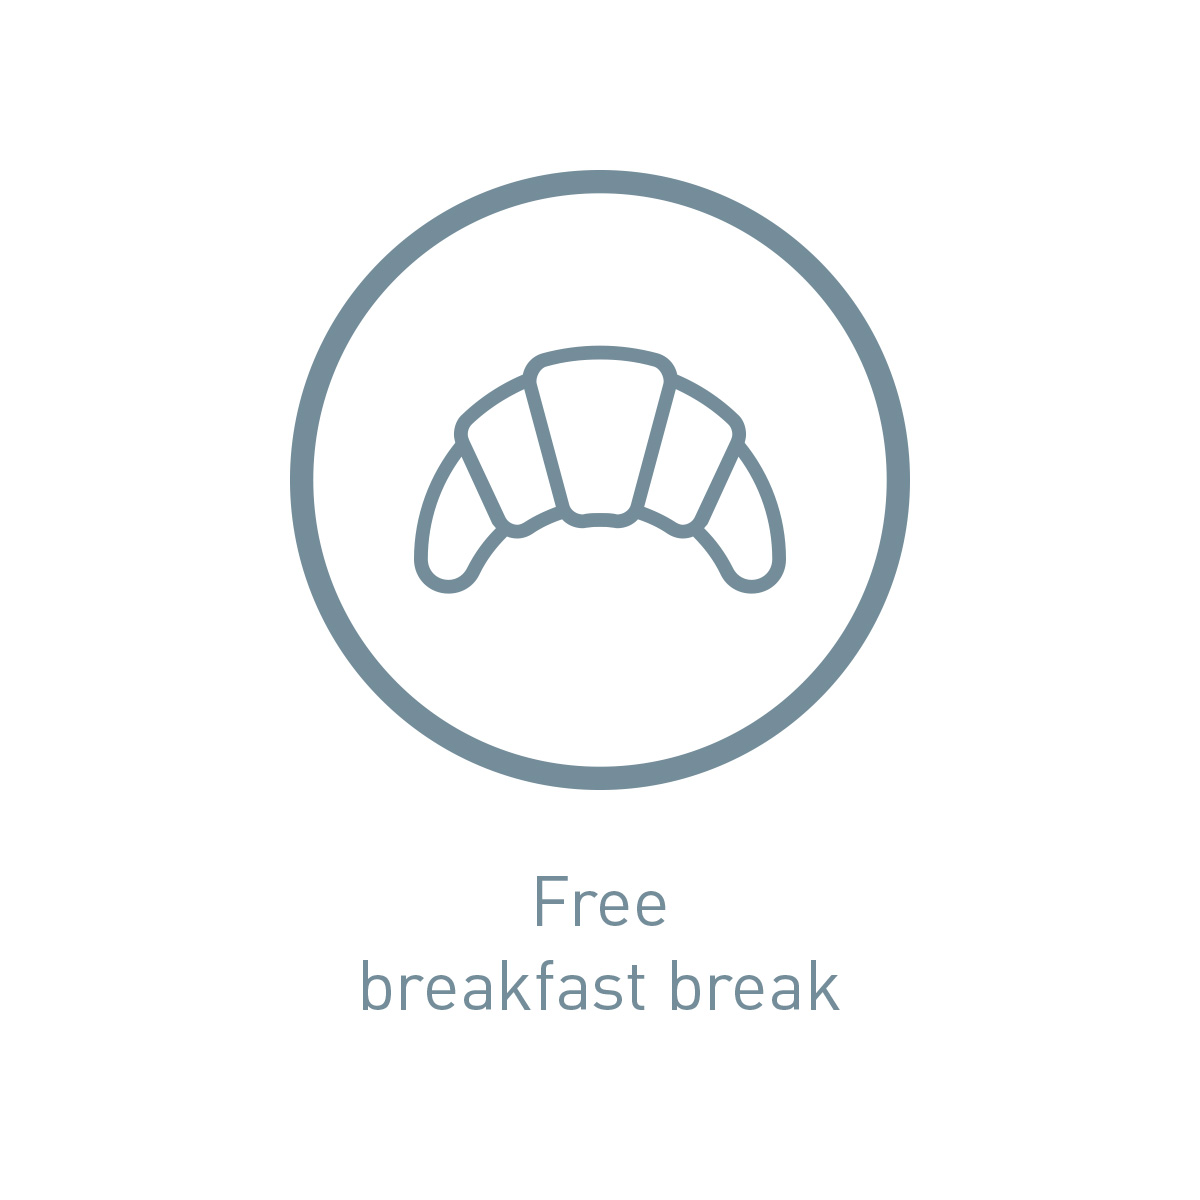 Icon free breakfast break